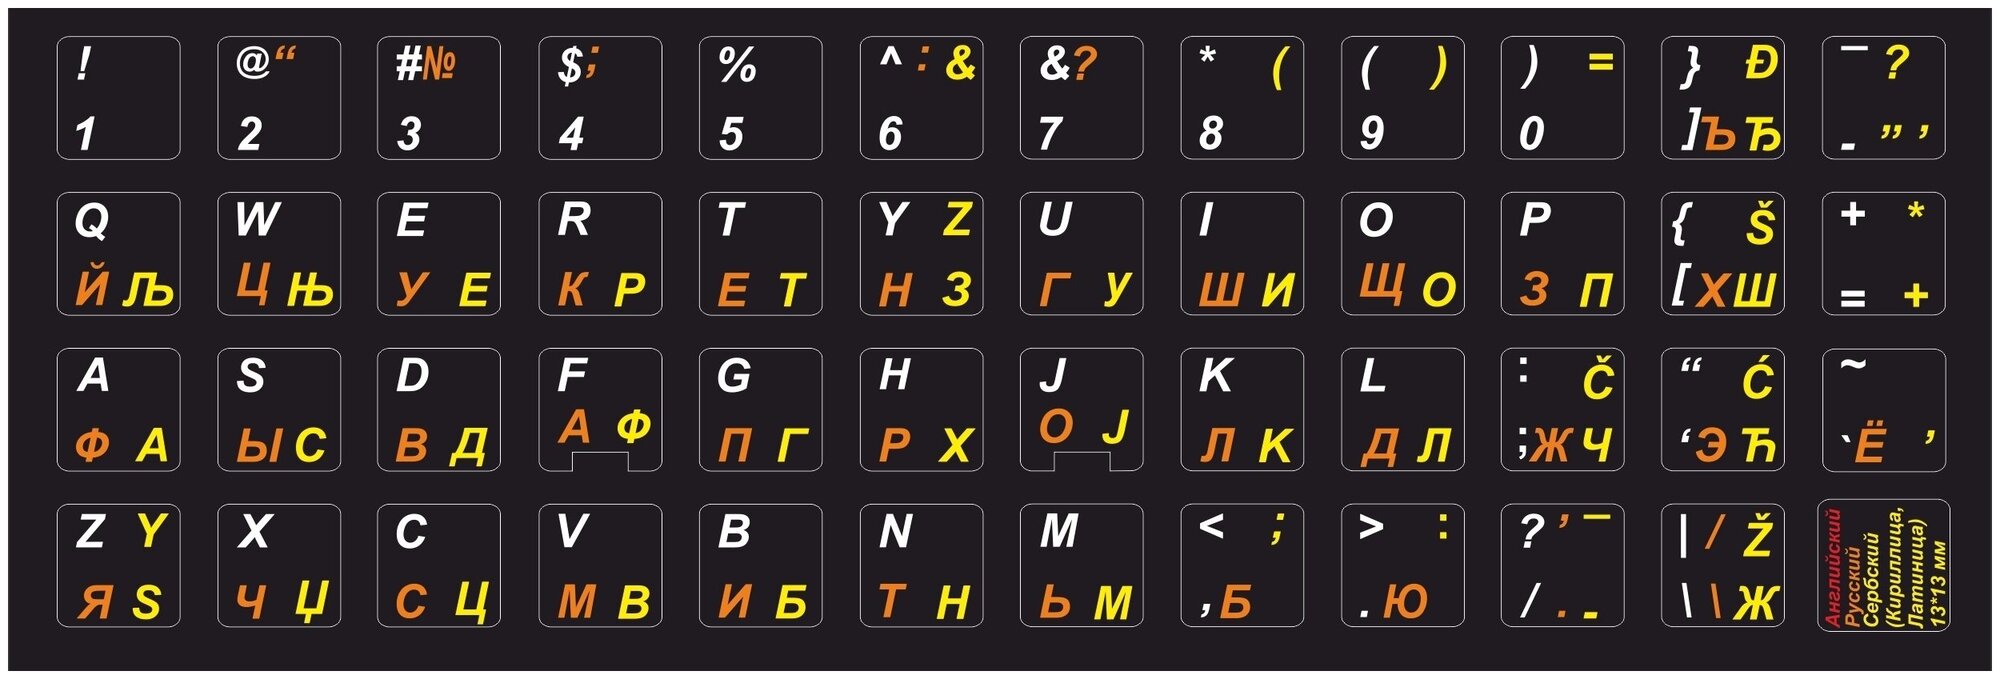 Сербские, английские, русские буквы на клавиатуру, наклейки букв 13x13 мм.